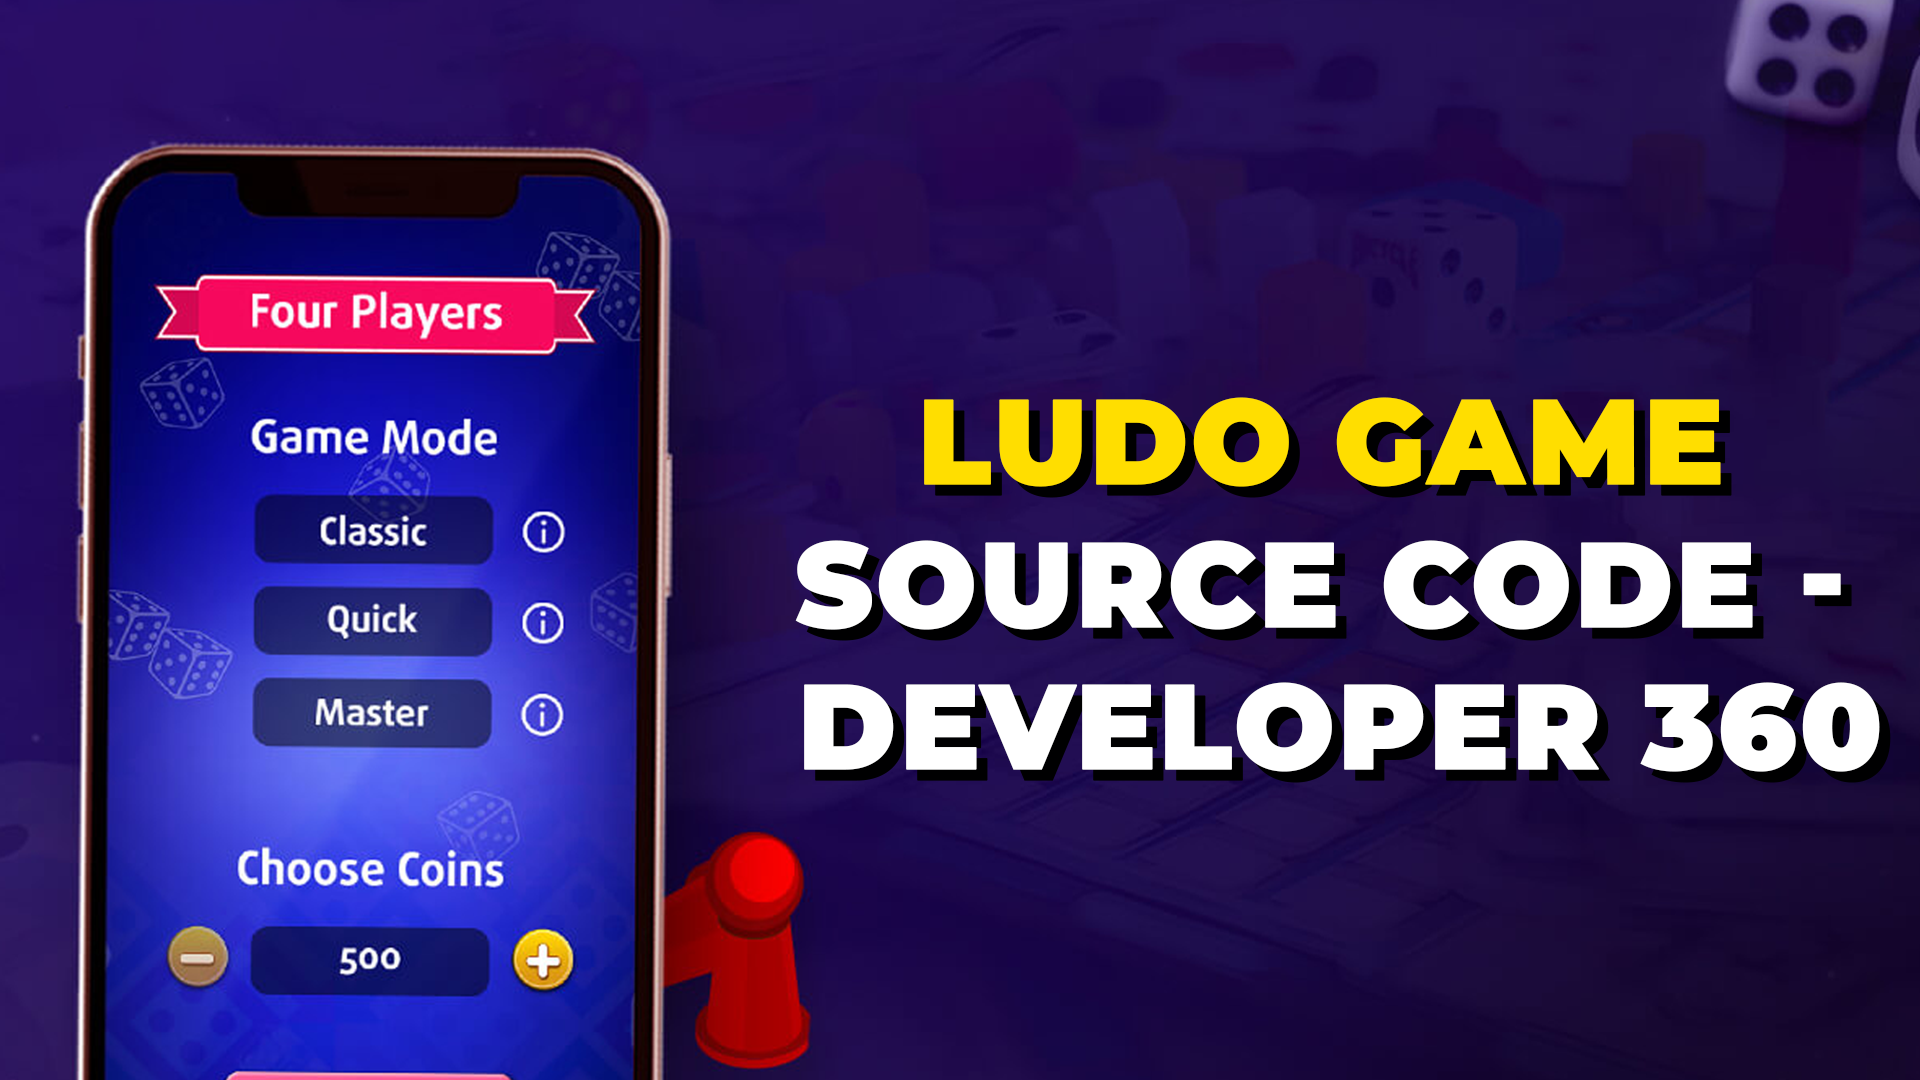 Ludo Game Source Code - Developer 360